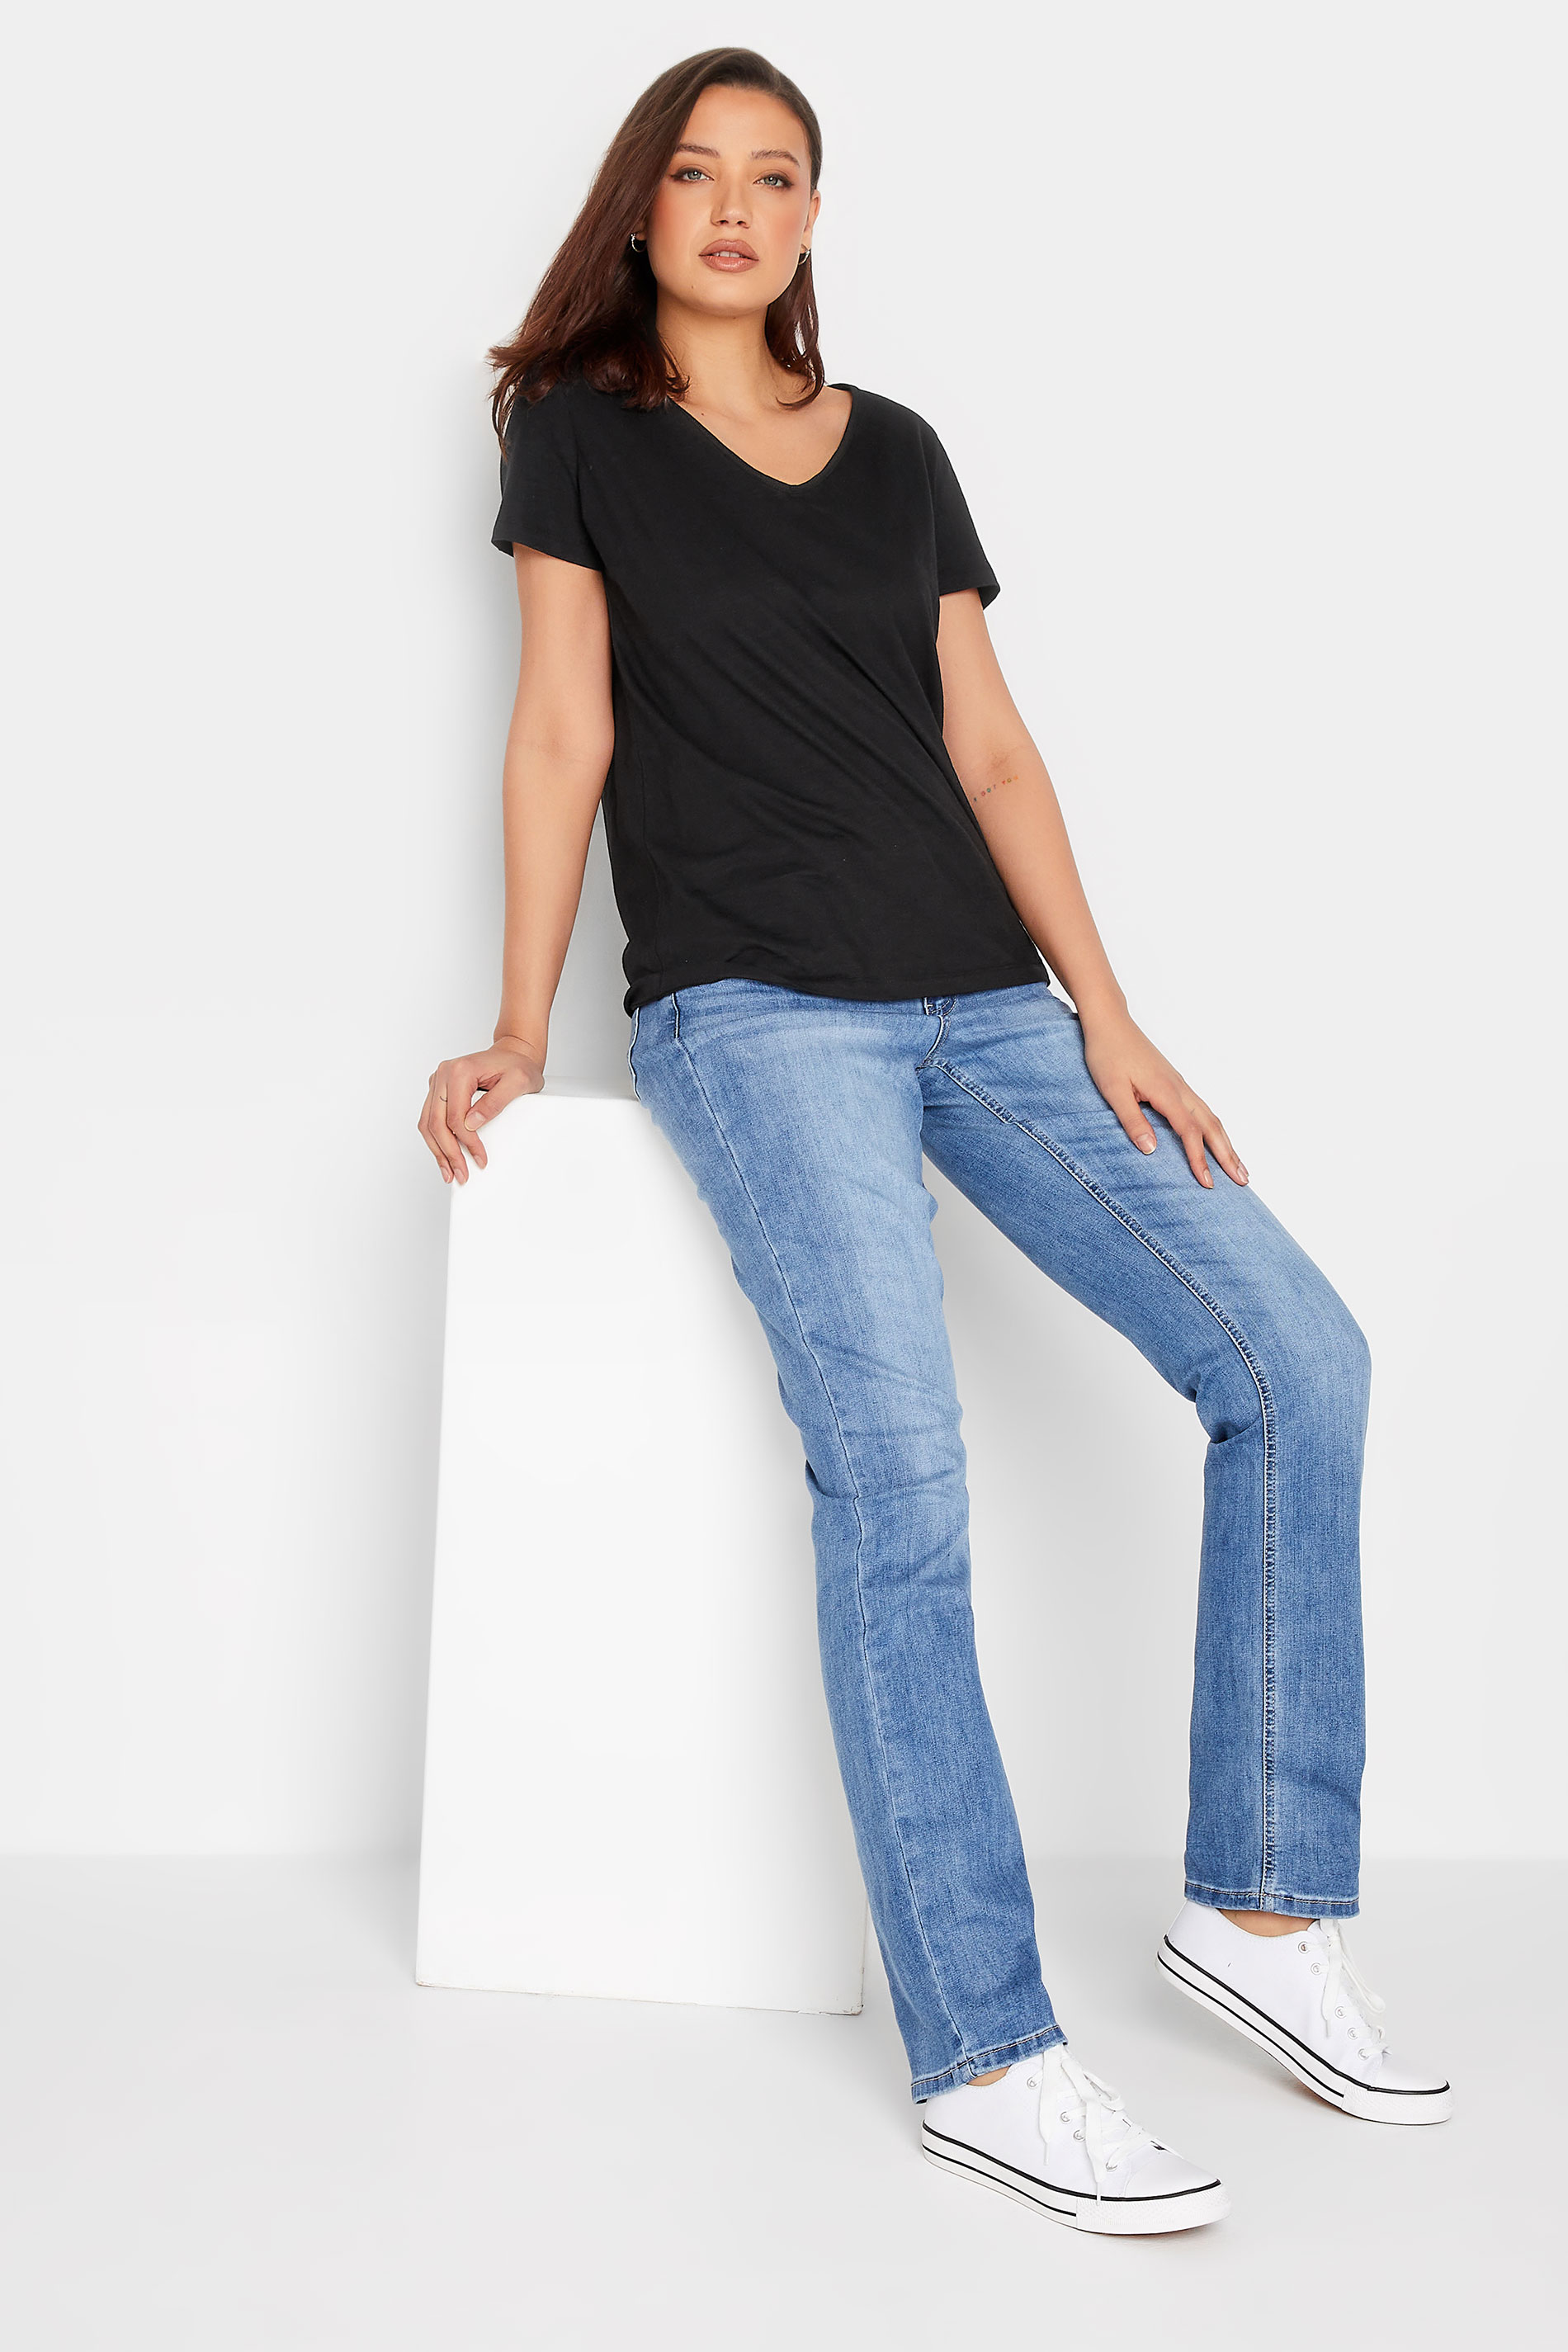 LTS Tall Women's Black V-Neck T-Shirt | Long Tall Sally 2